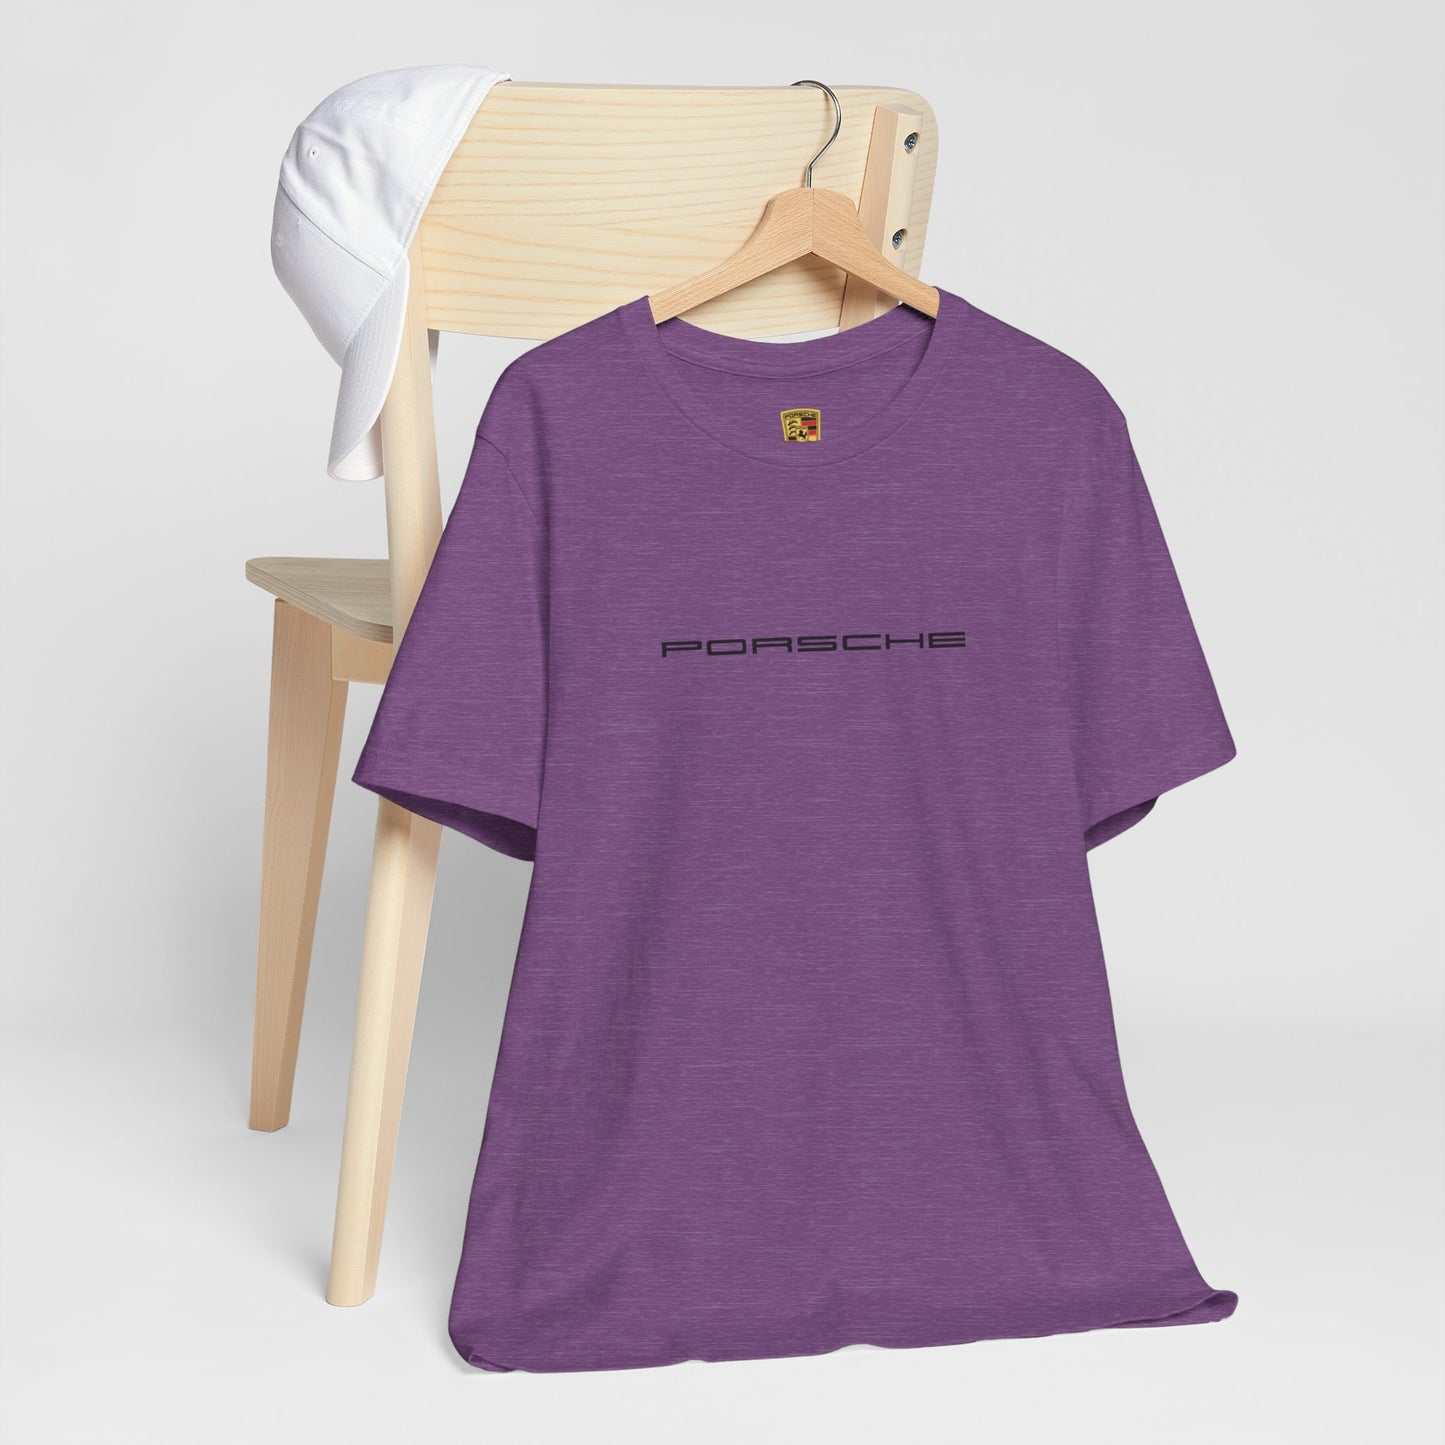 Porsche Inspired Logo Bella+Canvas Camiseta de manga corta - 16 colores - Camiseta de algodón unisex ética - Made in USA